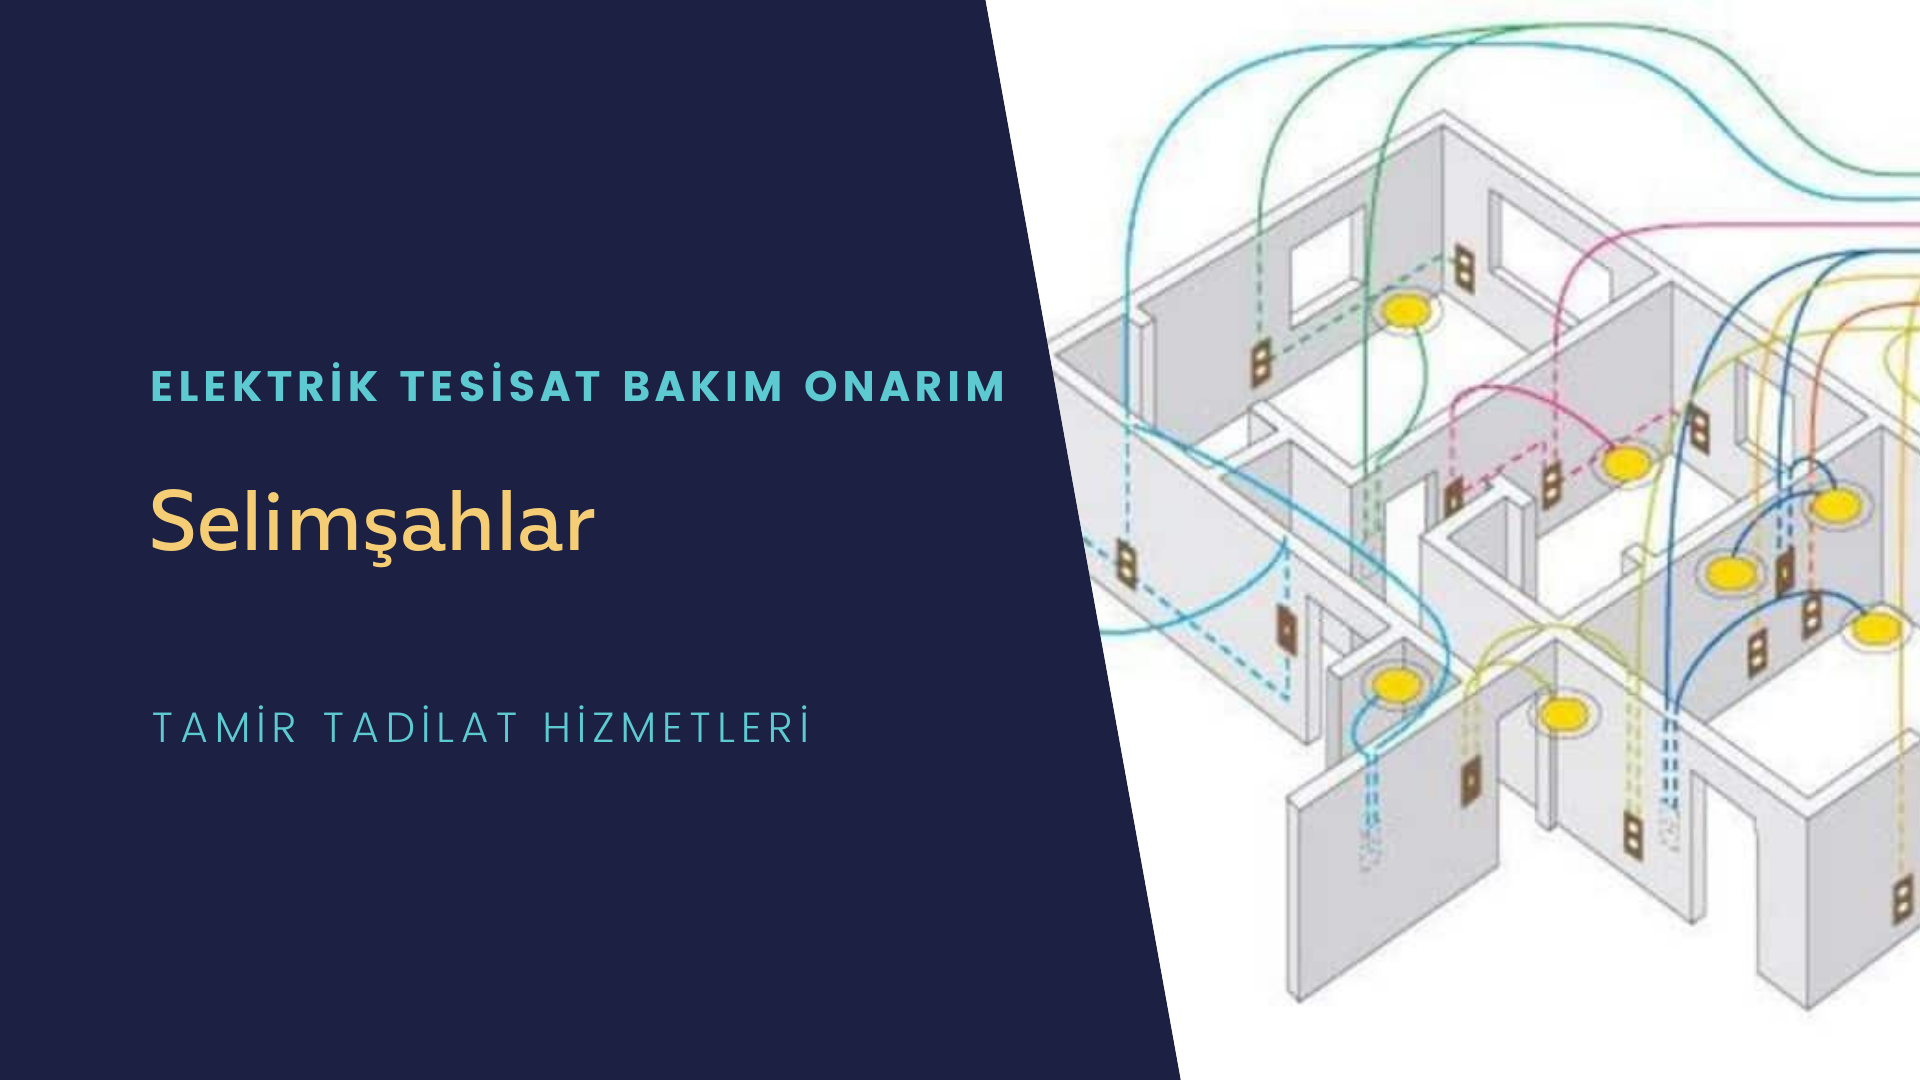 Selimşahlar'da elektrik tesisatı ustalarımı arıyorsunuz doğru adrestenizi Selimşahlar elektrik tesisatı ustalarımız 7/24 sizlere hizmet vermekten mutluluk duyar.